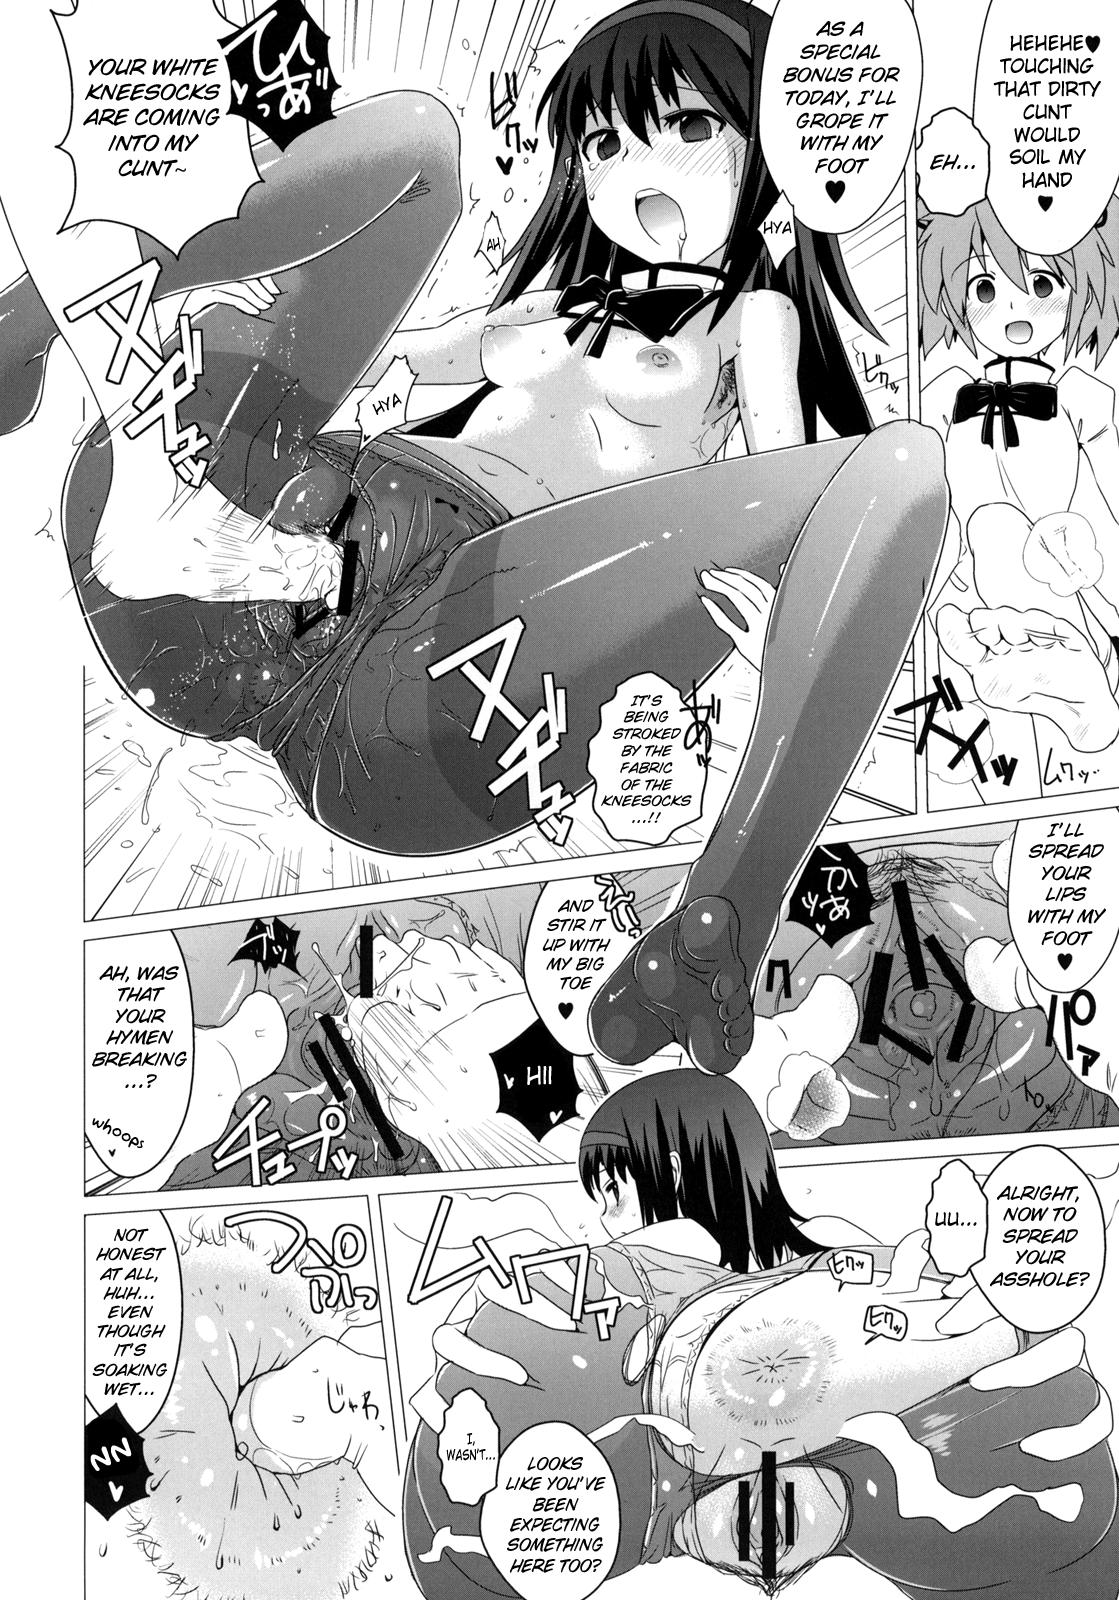 Buttplug Hentai Musume + Omake Paper - Puella magi madoka magica Village - Page 11